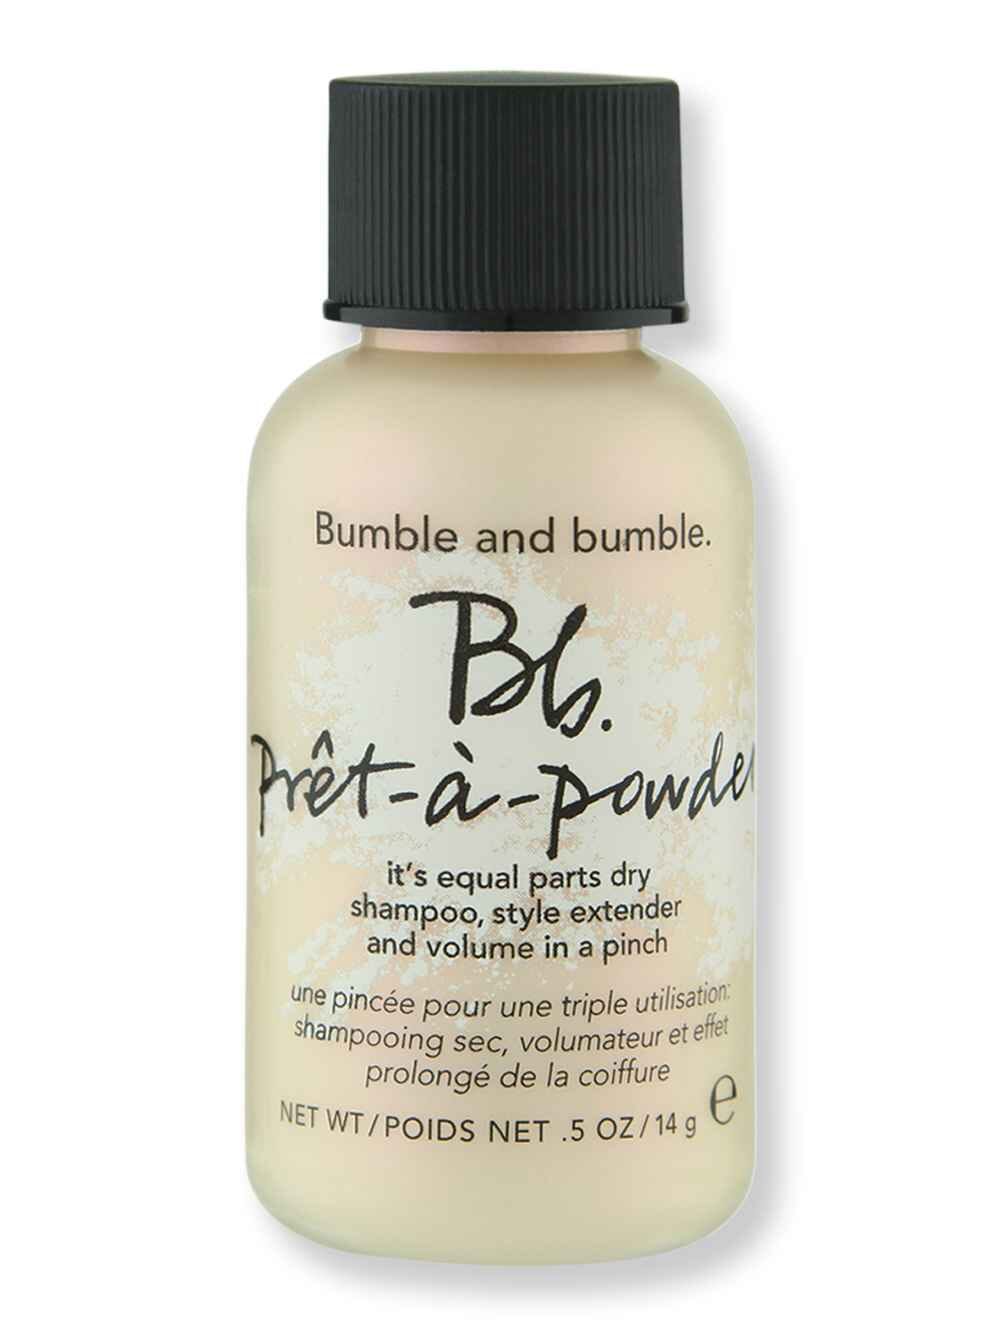 Bumble and bumble Bumble and bumble Pret-a-Powder 0.5 oz Dry Shampoos 